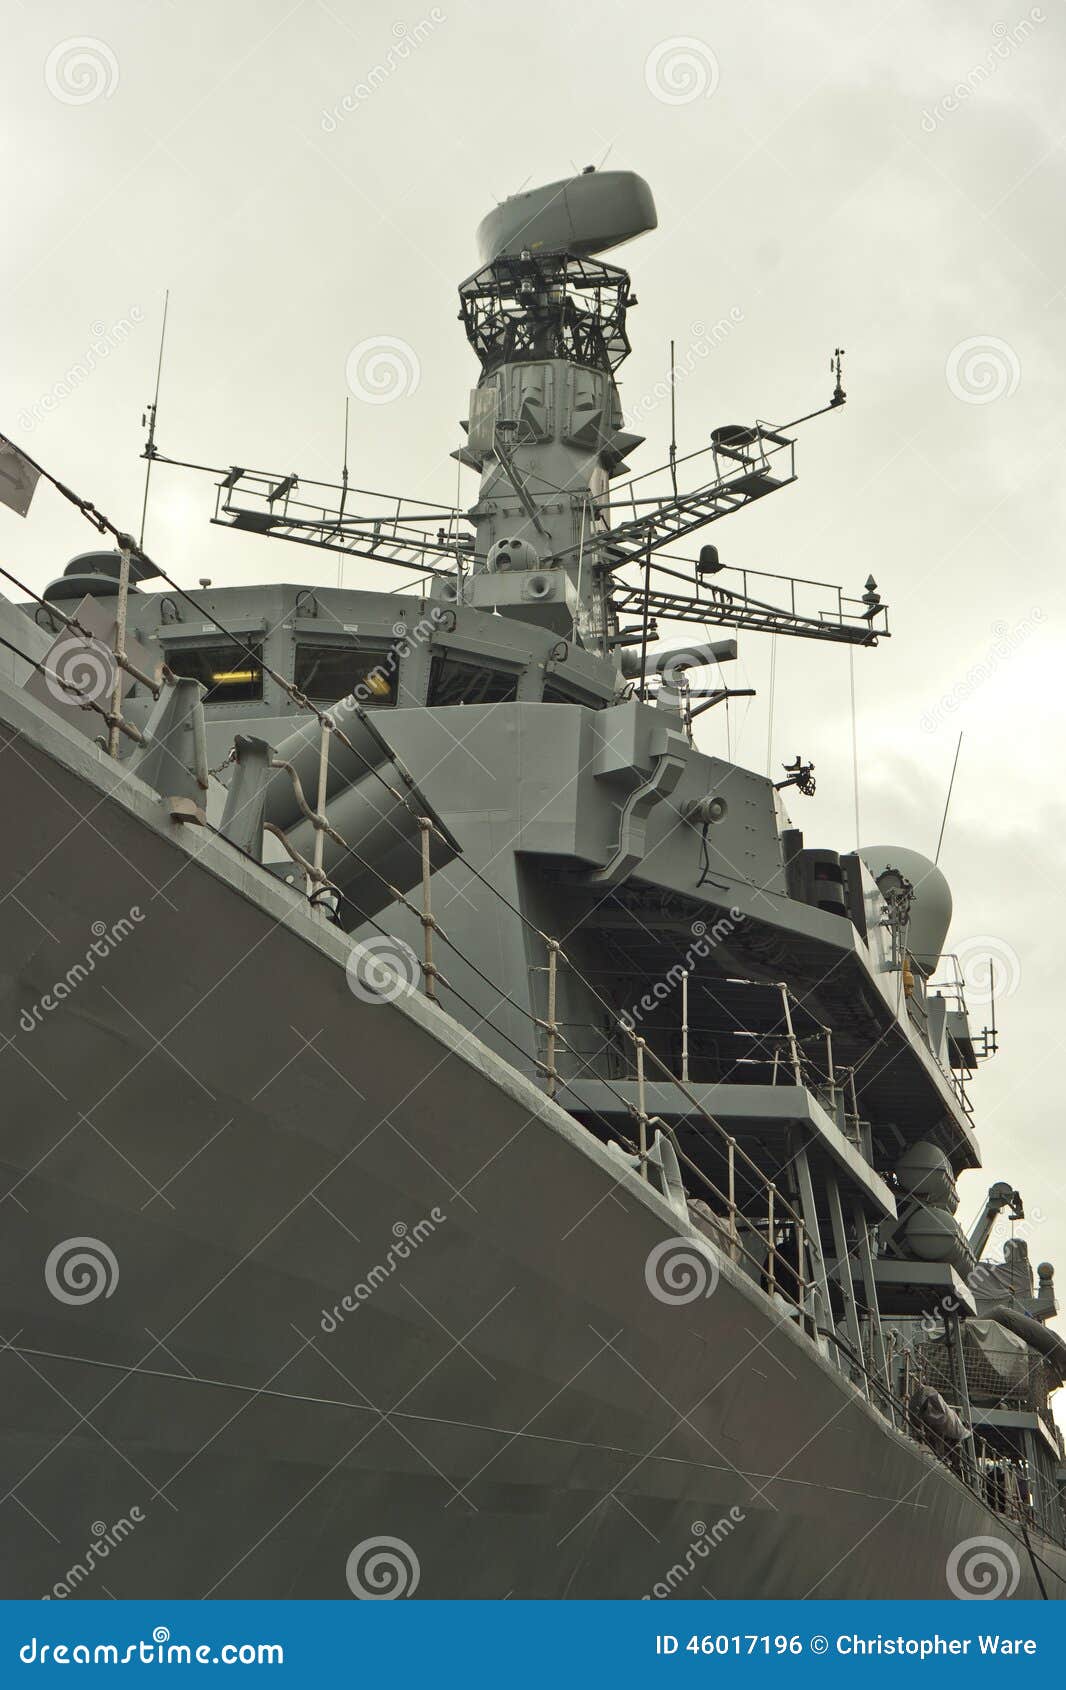 port side of royal navy frigate